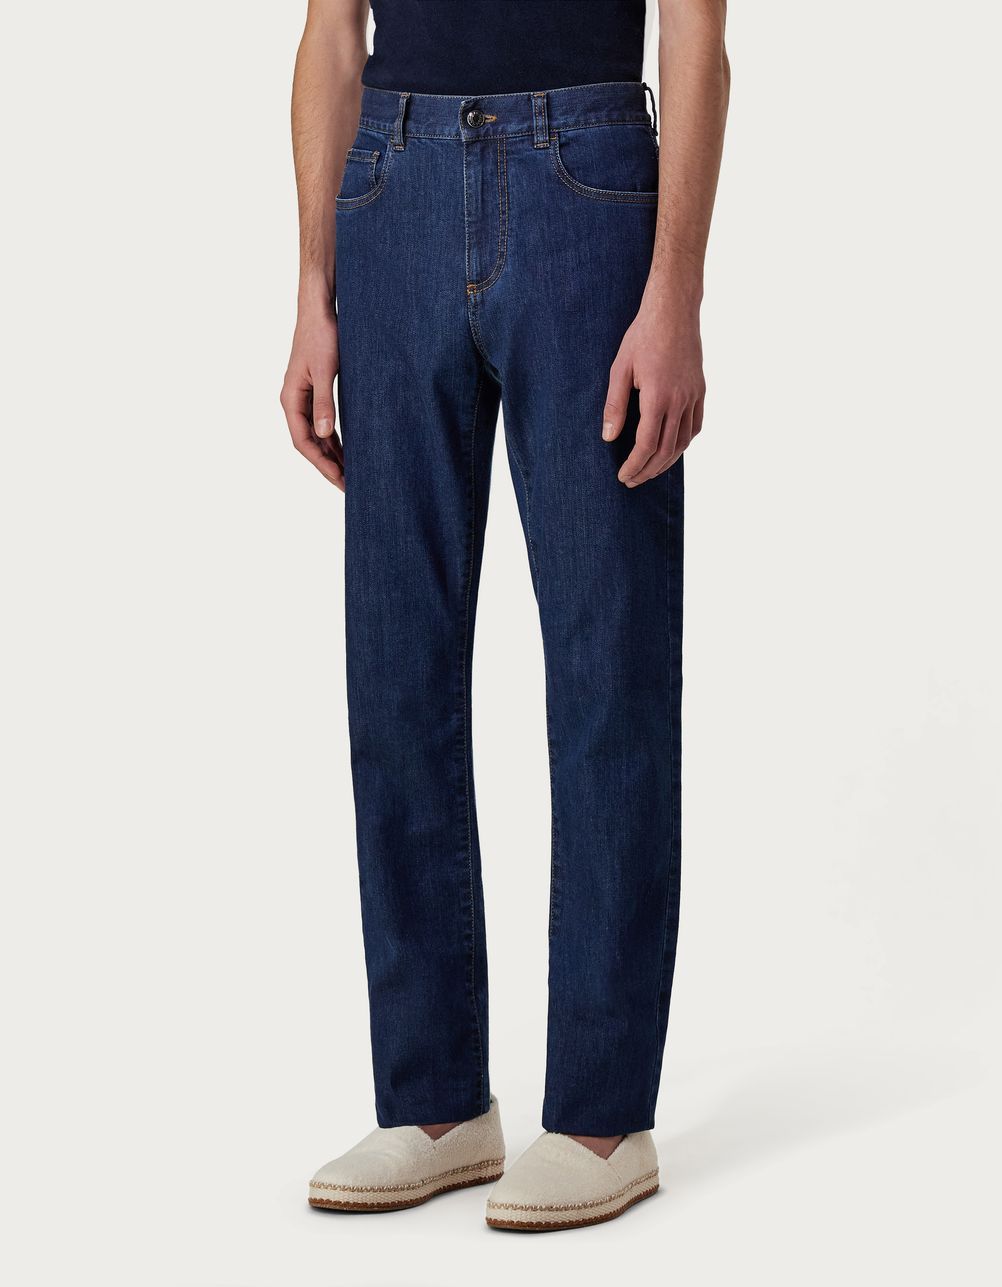 Five-pocket regular-fit stretch denim pants in blue